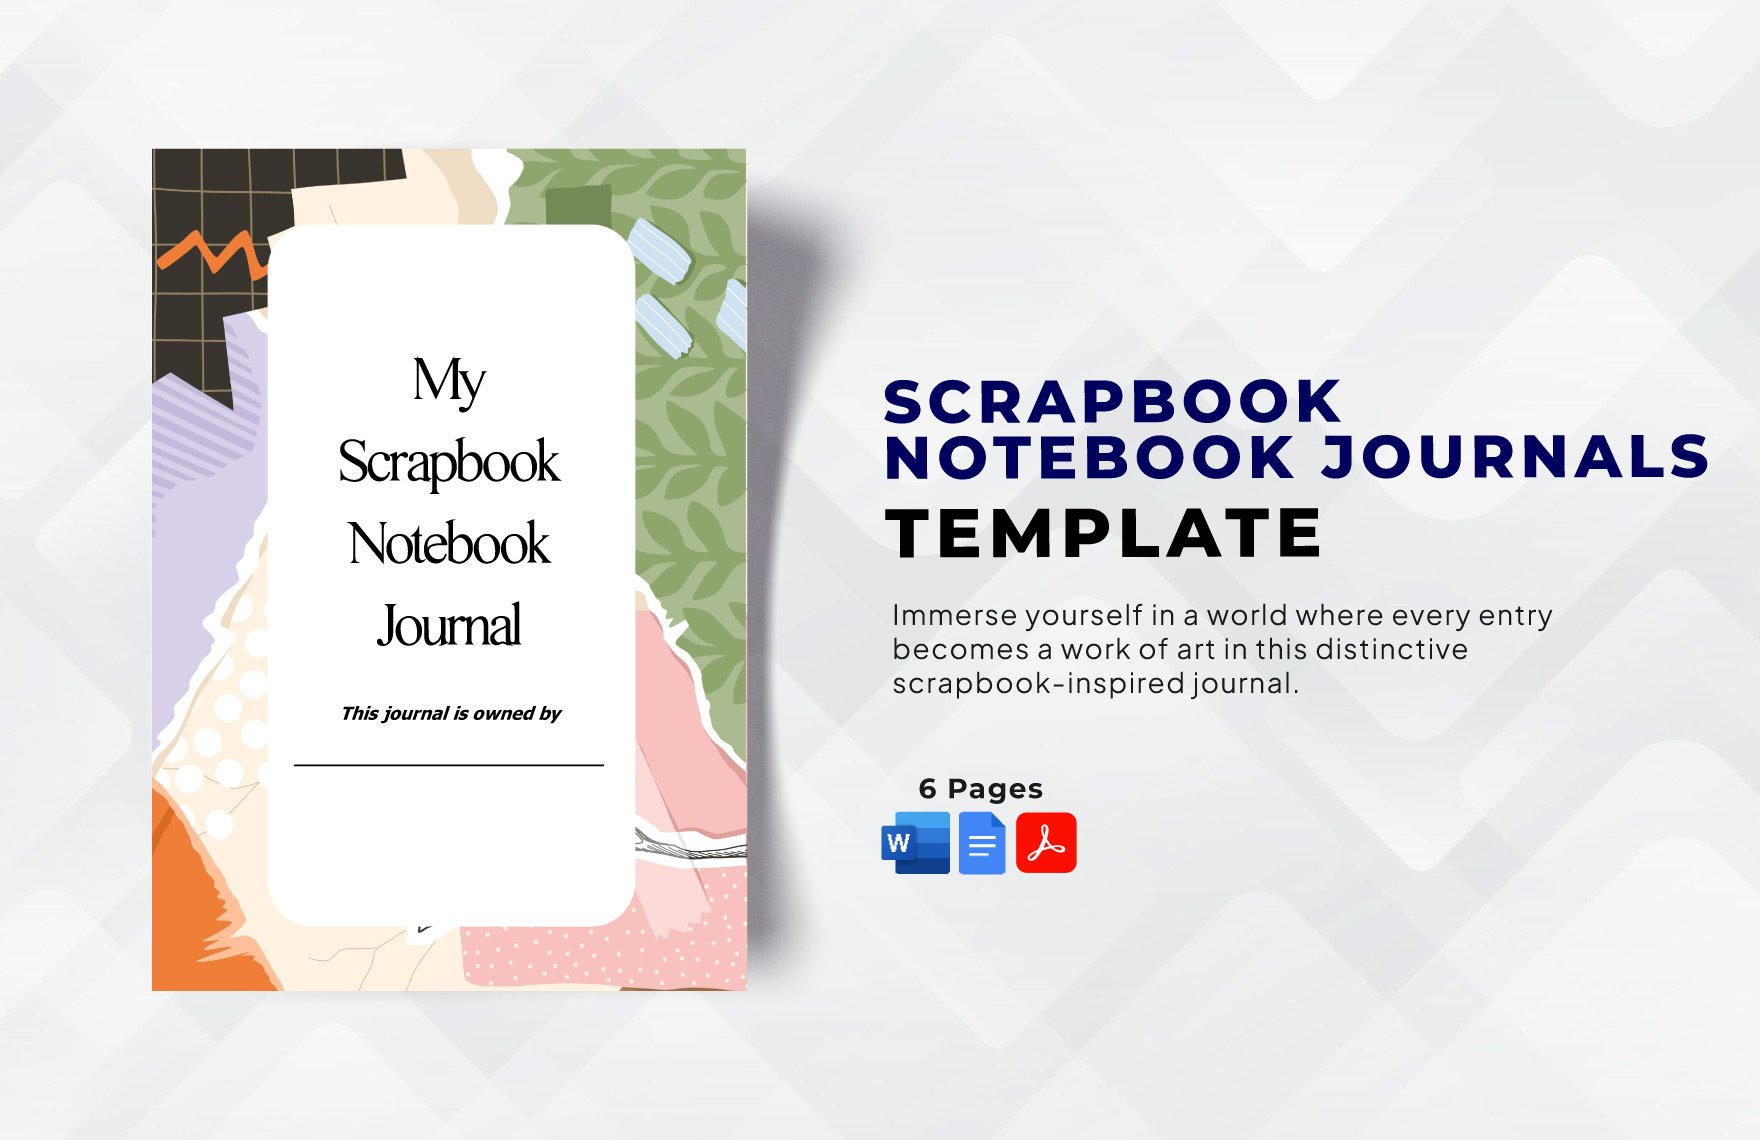 Scrapbook Notebook Journals Template - Download in Word, Google Docs, PDF